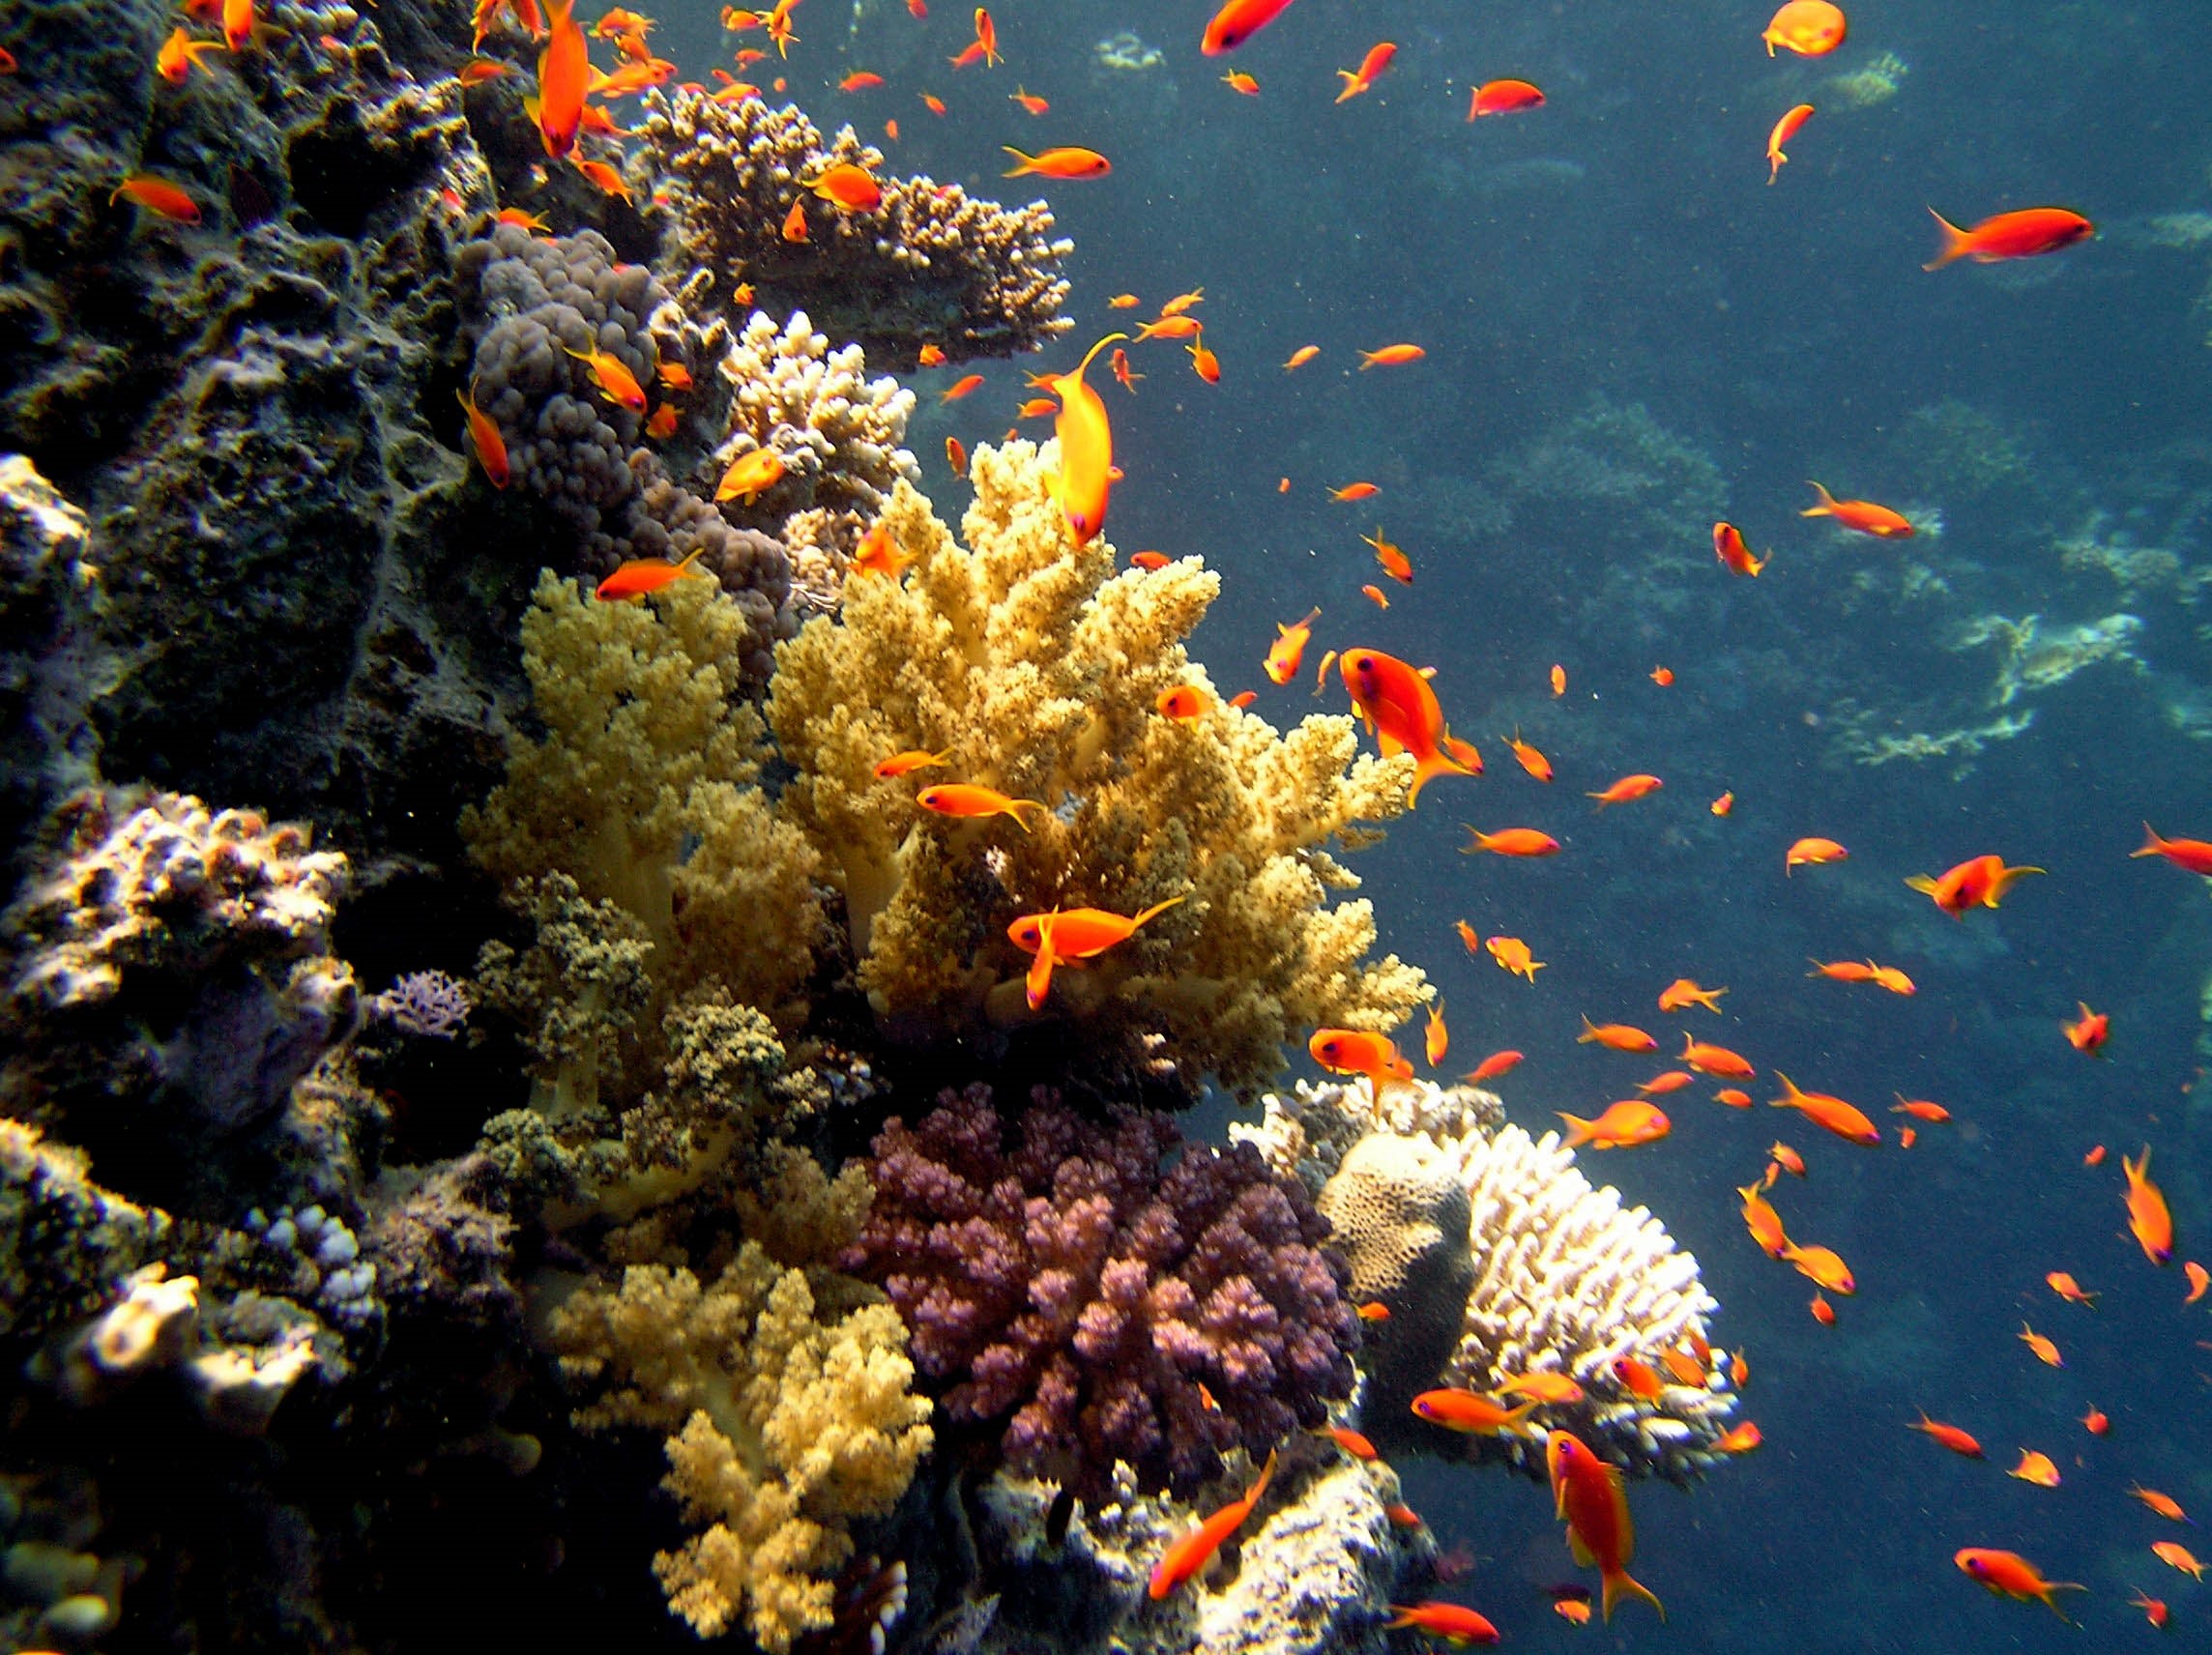 Организмы обитатели водной среды. Водная среда обитания. Подводный мир красного моря. Морские растения. Вводная среда обитания.